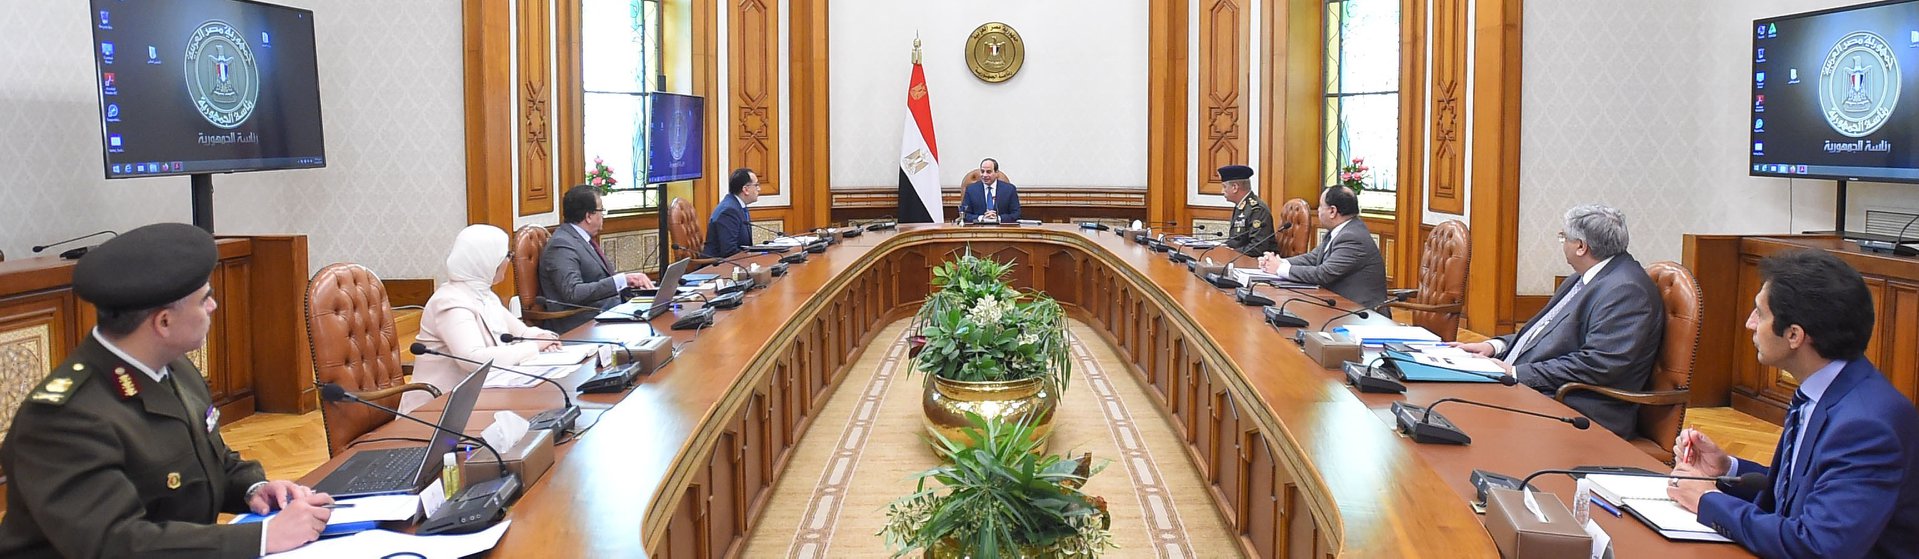   بسام راضى: الرئيس السيسى يوجه بزيادة بدل المهن الطبية بنسبة 75 %